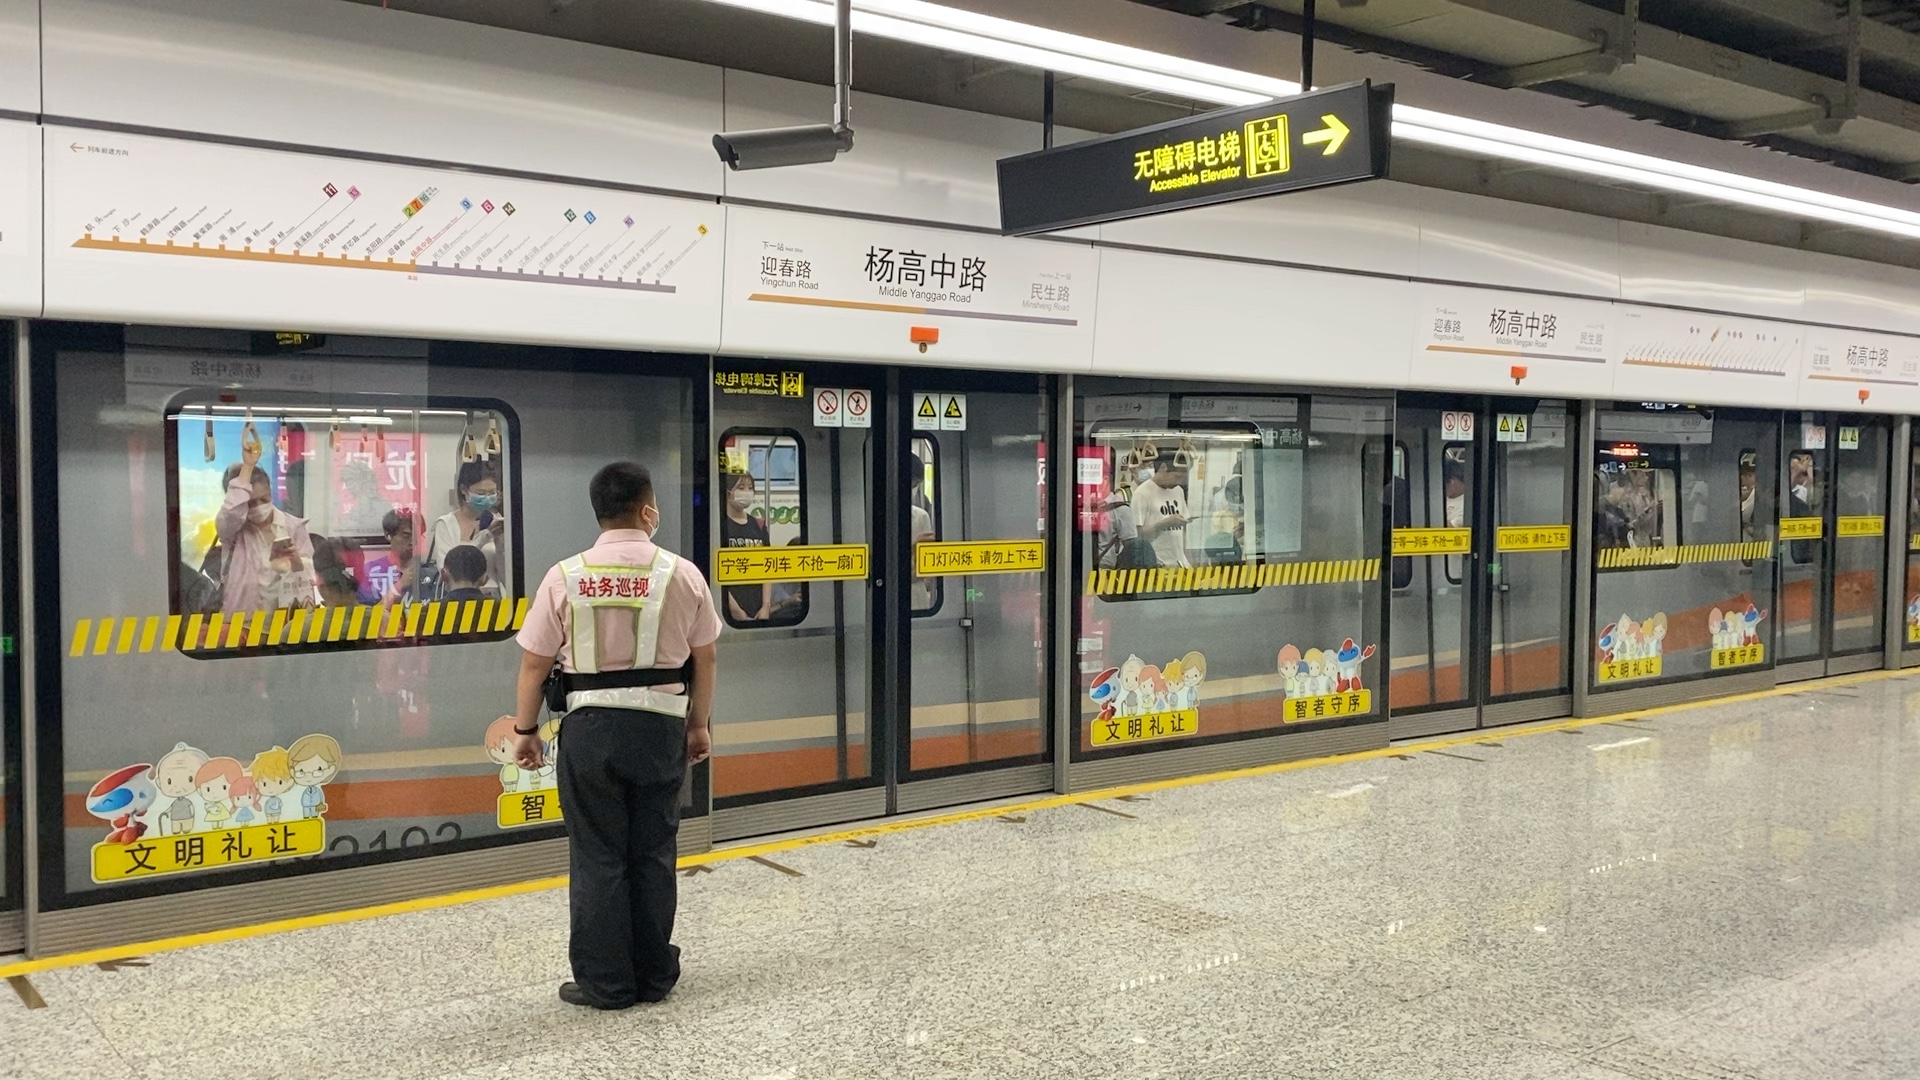 上海地铁18号线(航头方向)出杨高中路站